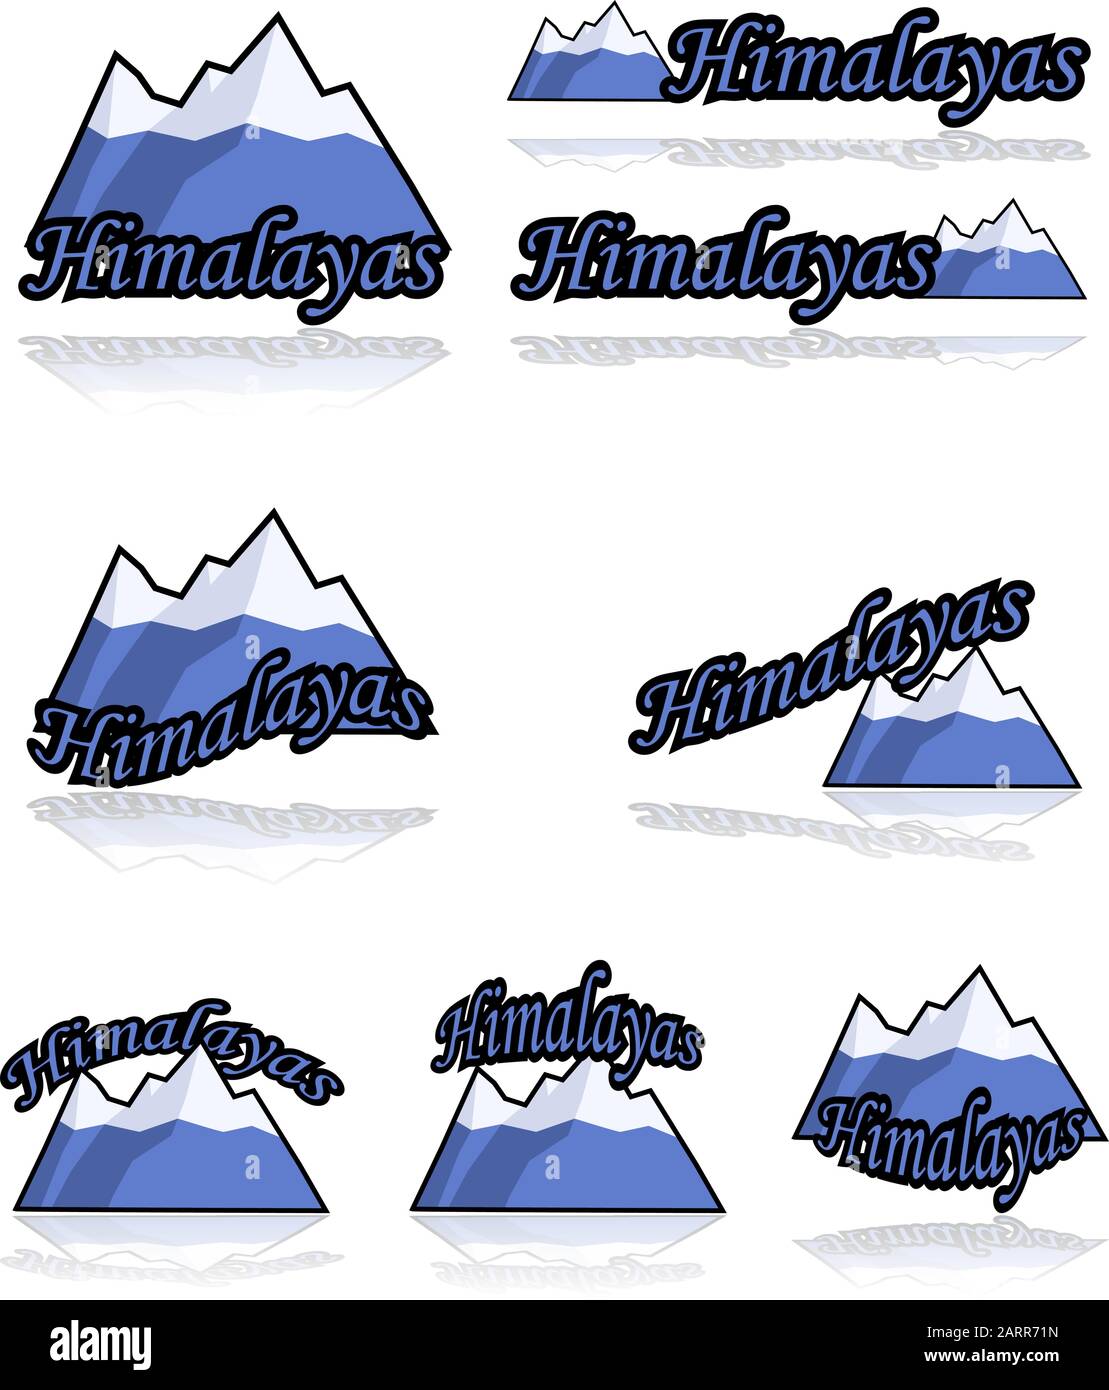 Imposta icona che mostra una serie di cartoni animati di montagne combinato con diverse varianti della parola Himalaya Illustrazione Vettoriale